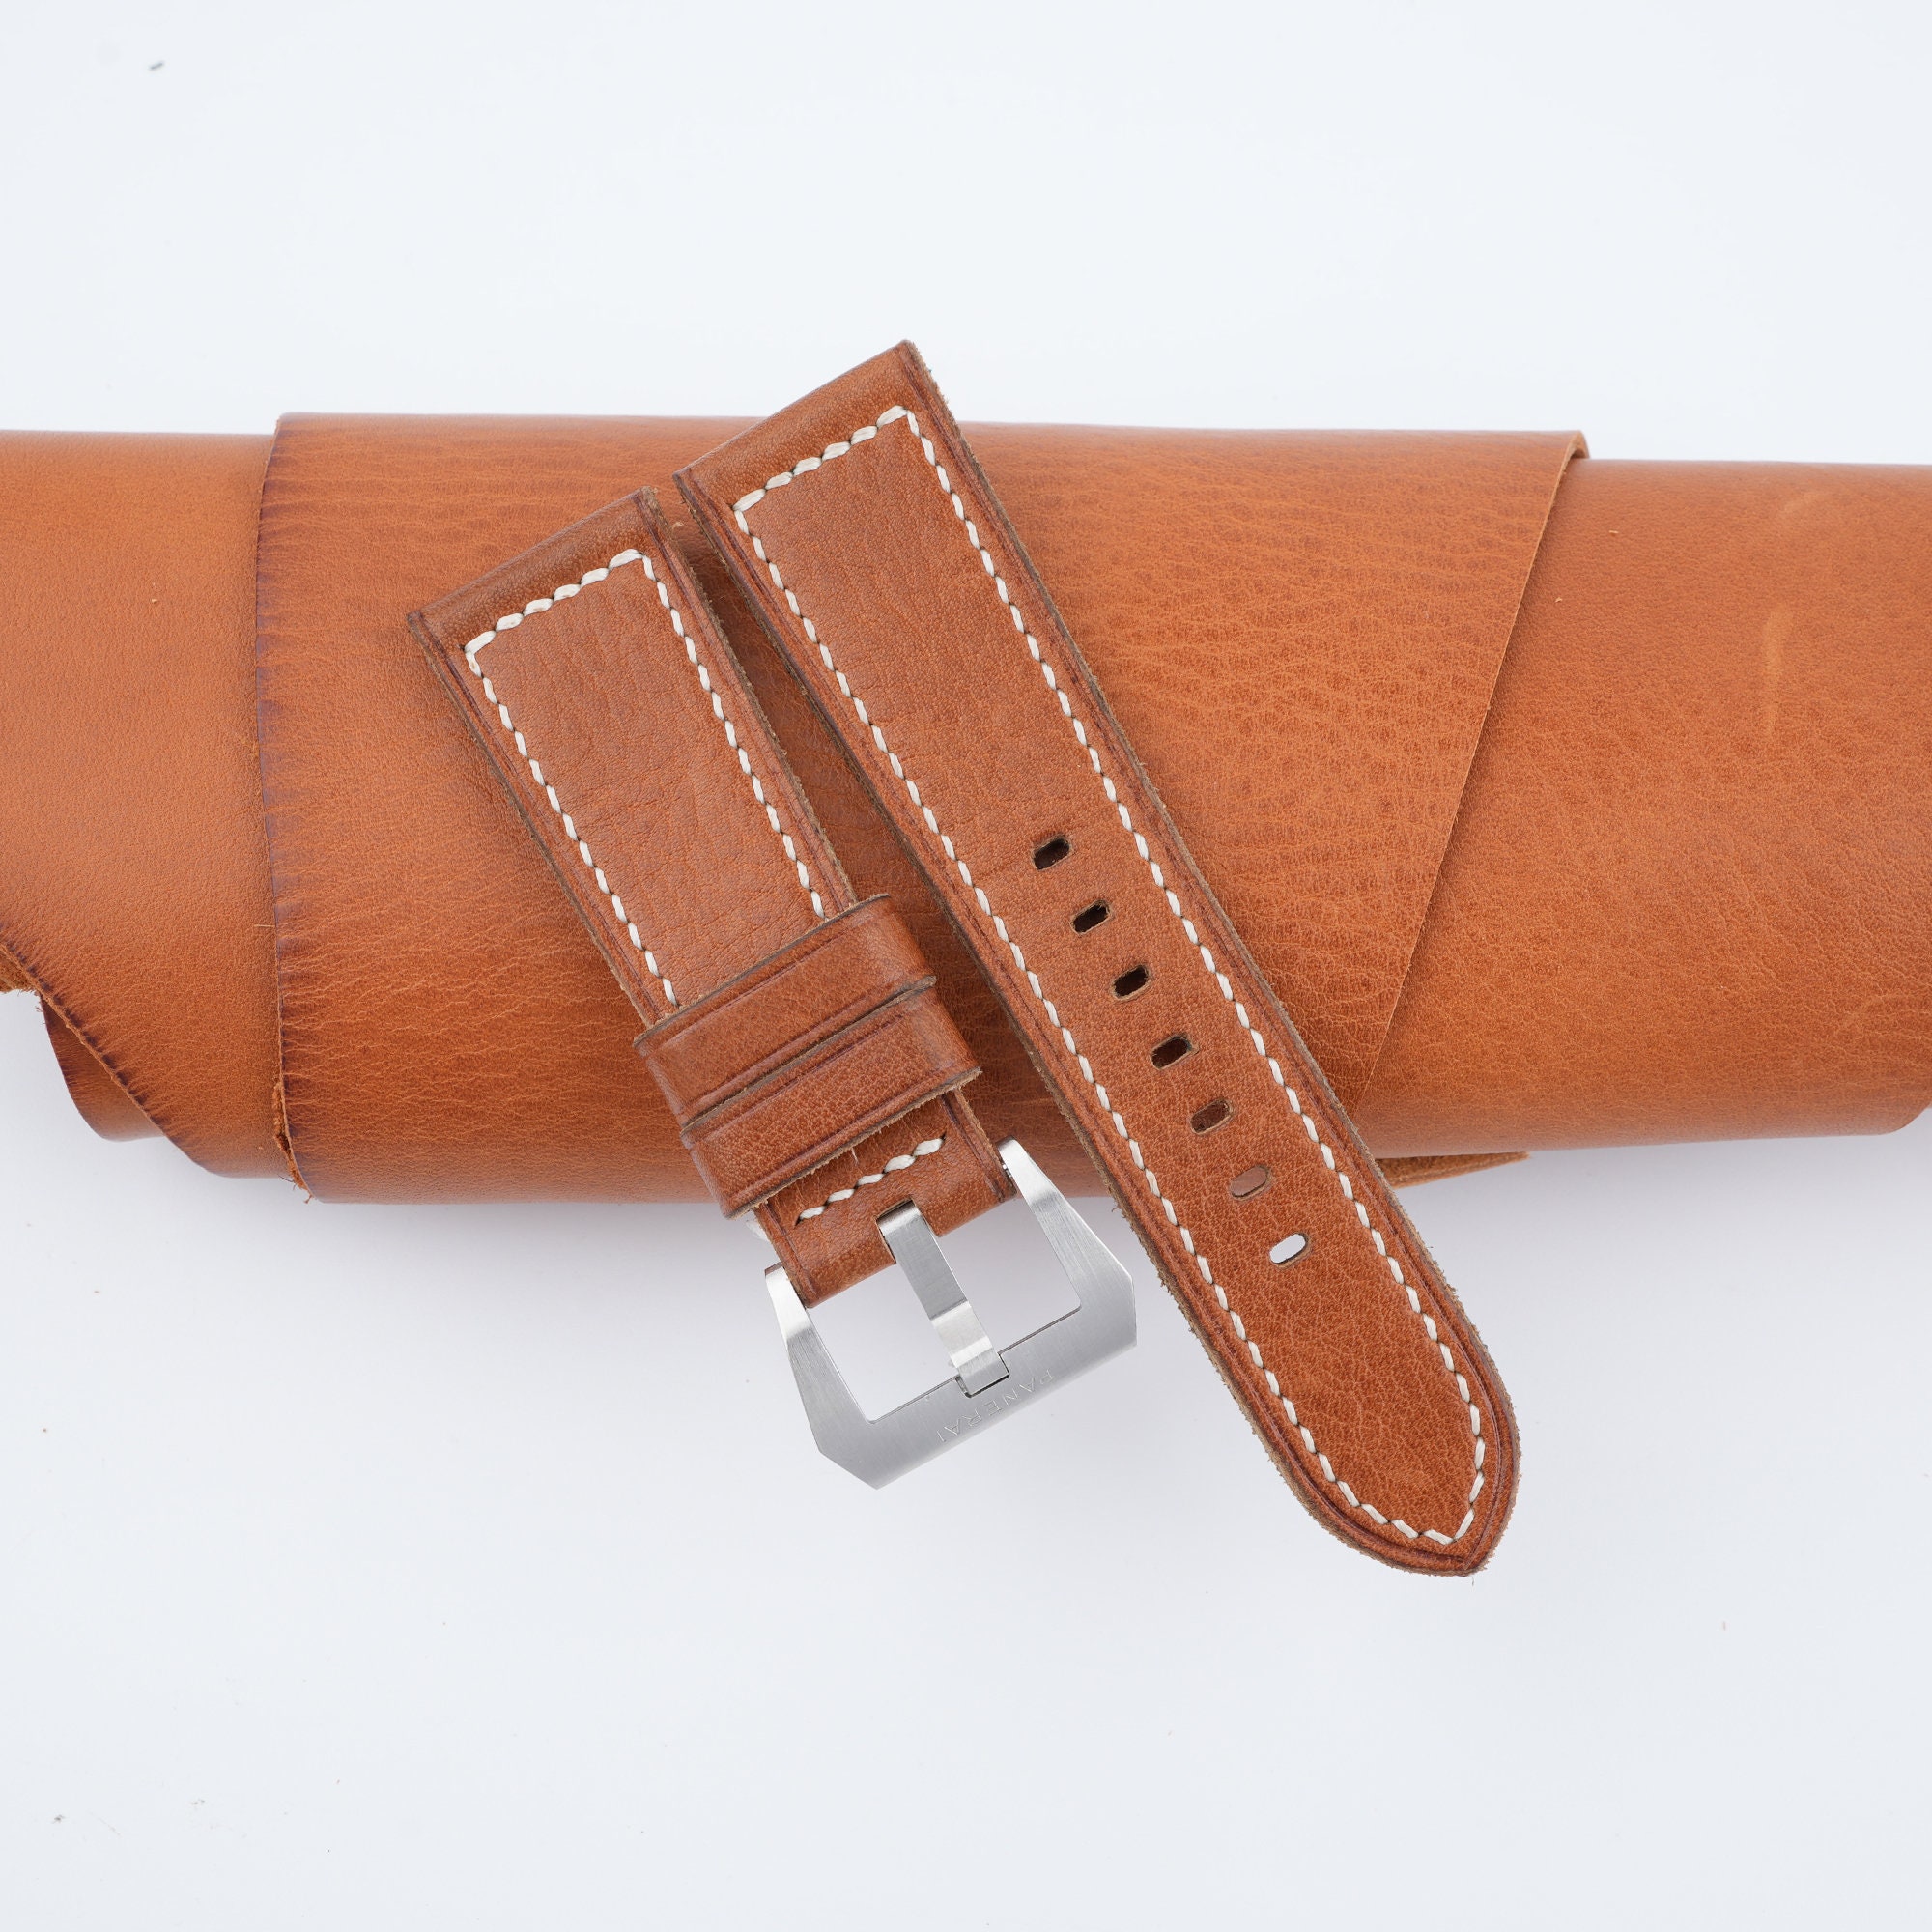 Handdn Orange Python Leather Apple Watch Band